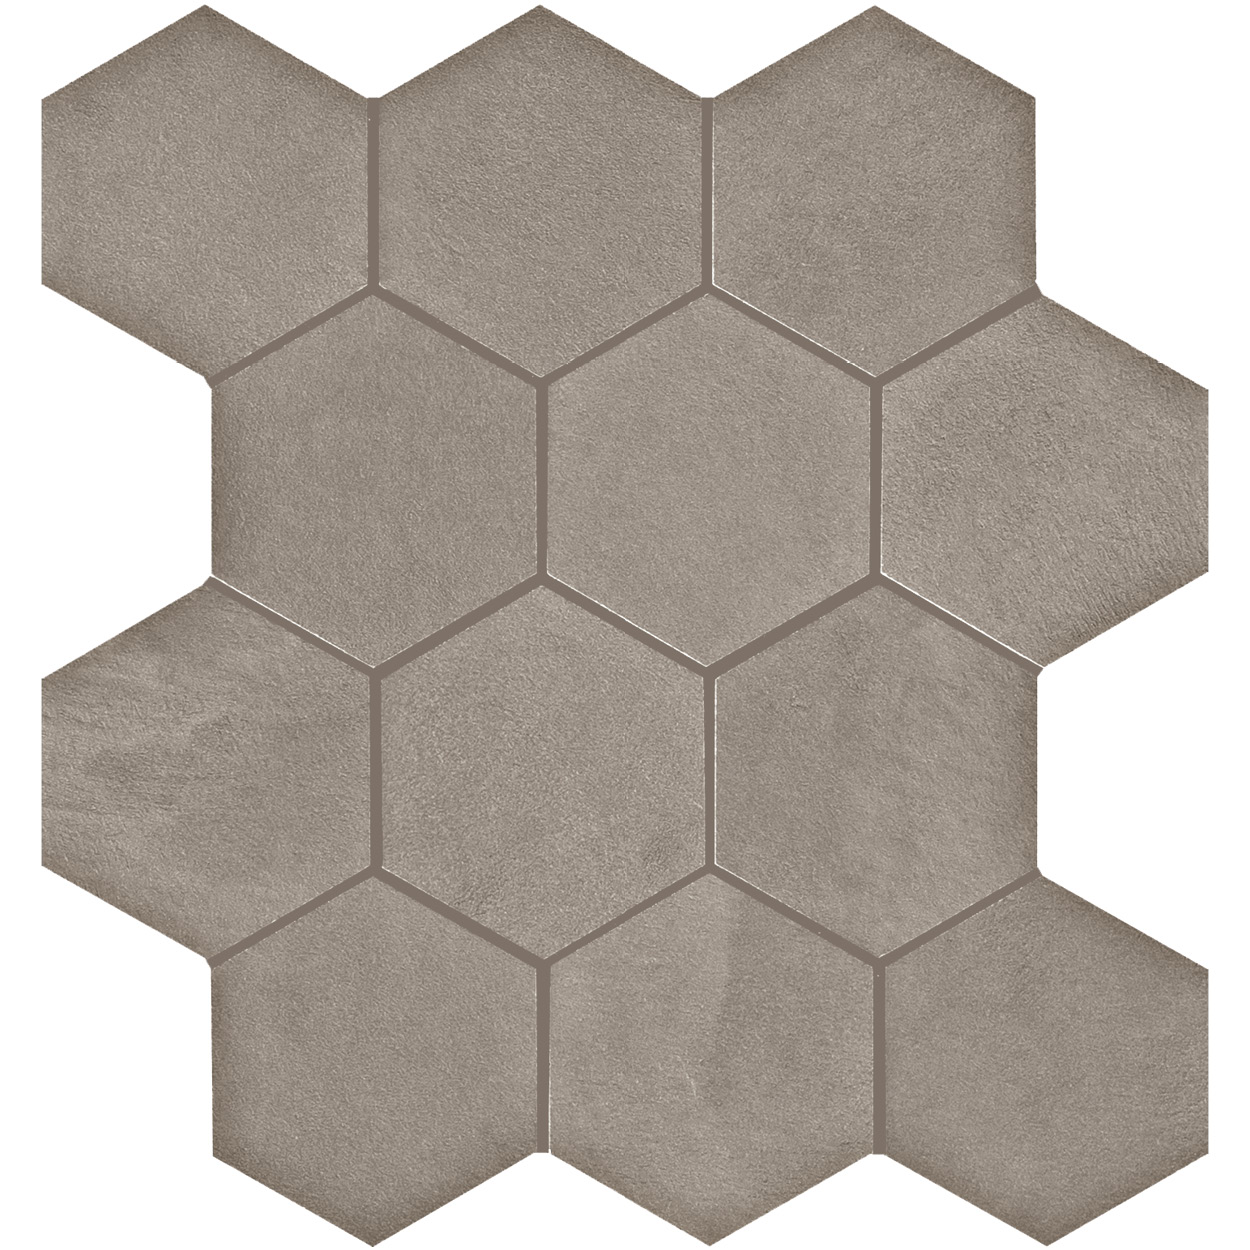 3 X 3 Seamless WR_02 hexagon